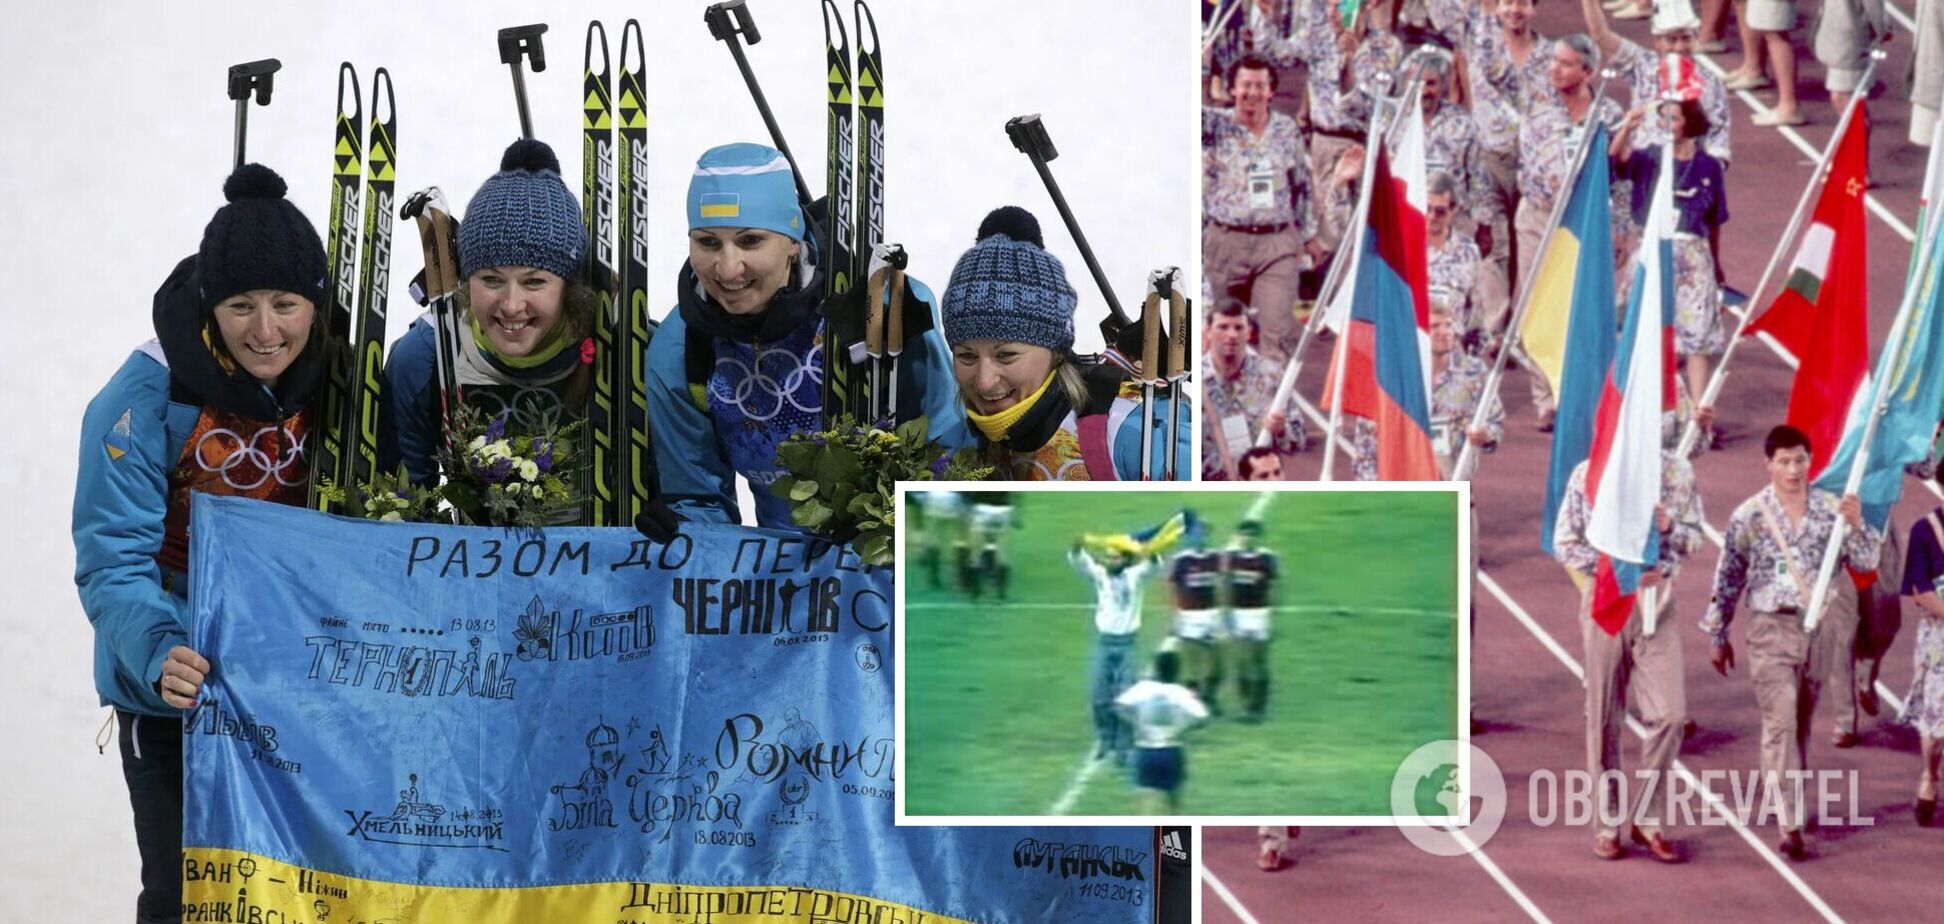 'Потенциально опасный': за флаг Украины арестовывали на Олимпиаде в Канаде, а первый знаменосец выступал в РФ после вторжения